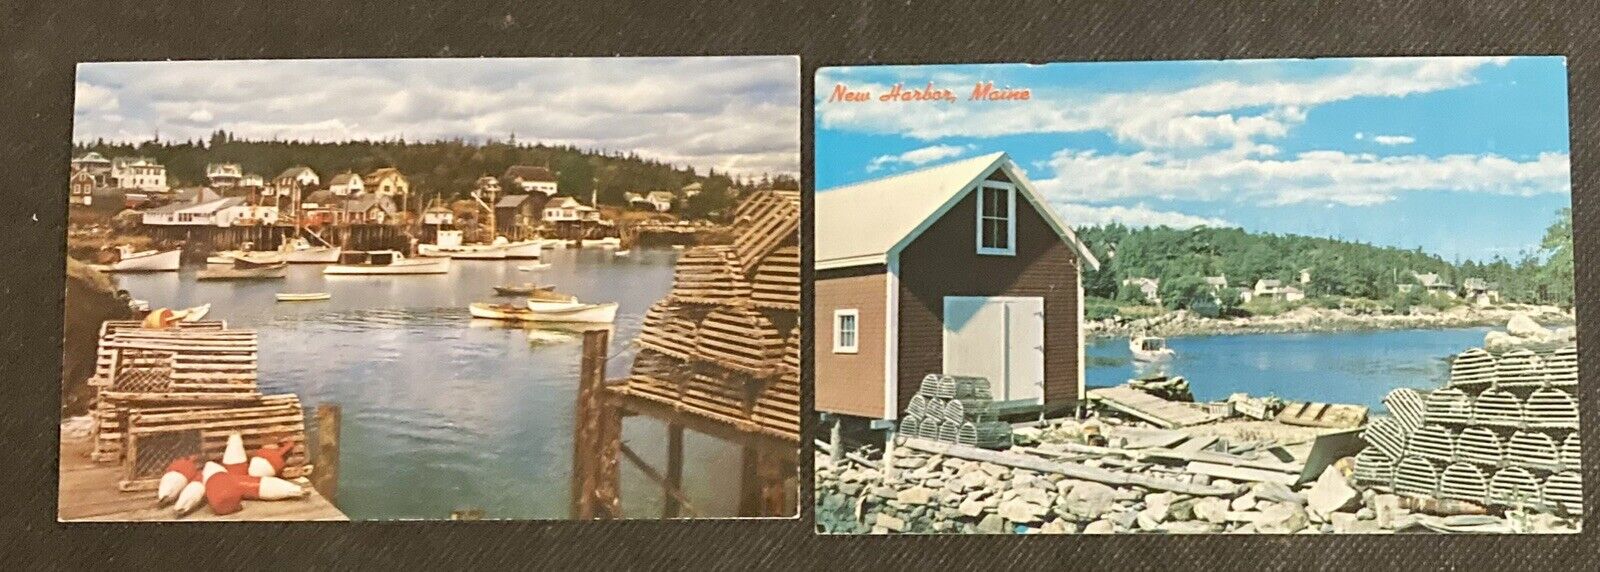 New Harbor, ME Vintage Postcards Lot of 2 Lobster Traps, Boats